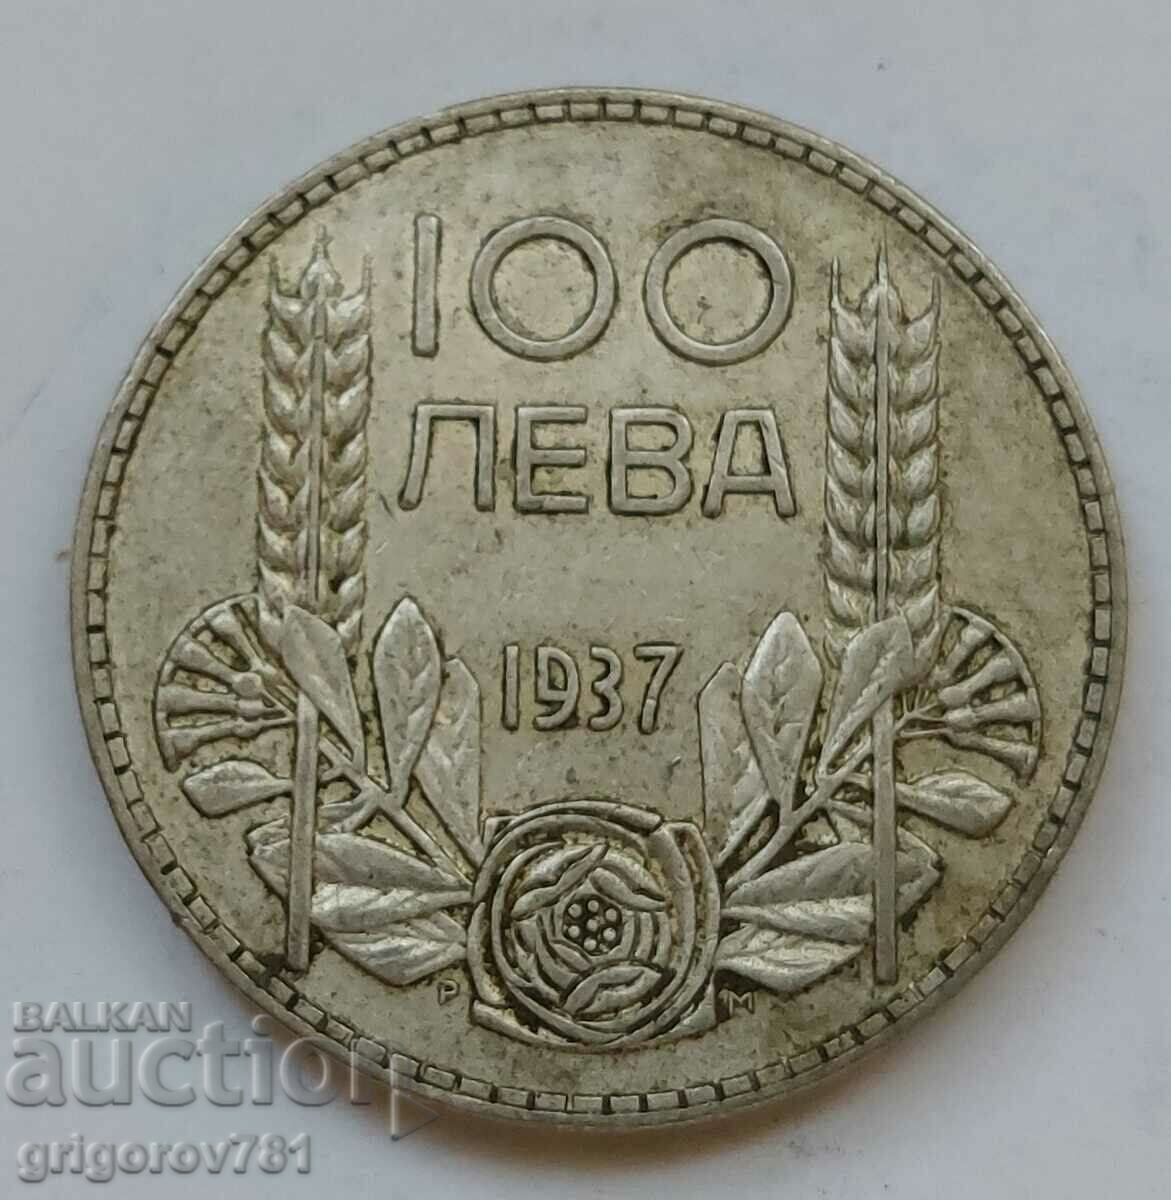 100 leva silver Bulgaria 1937 - silver coin #136